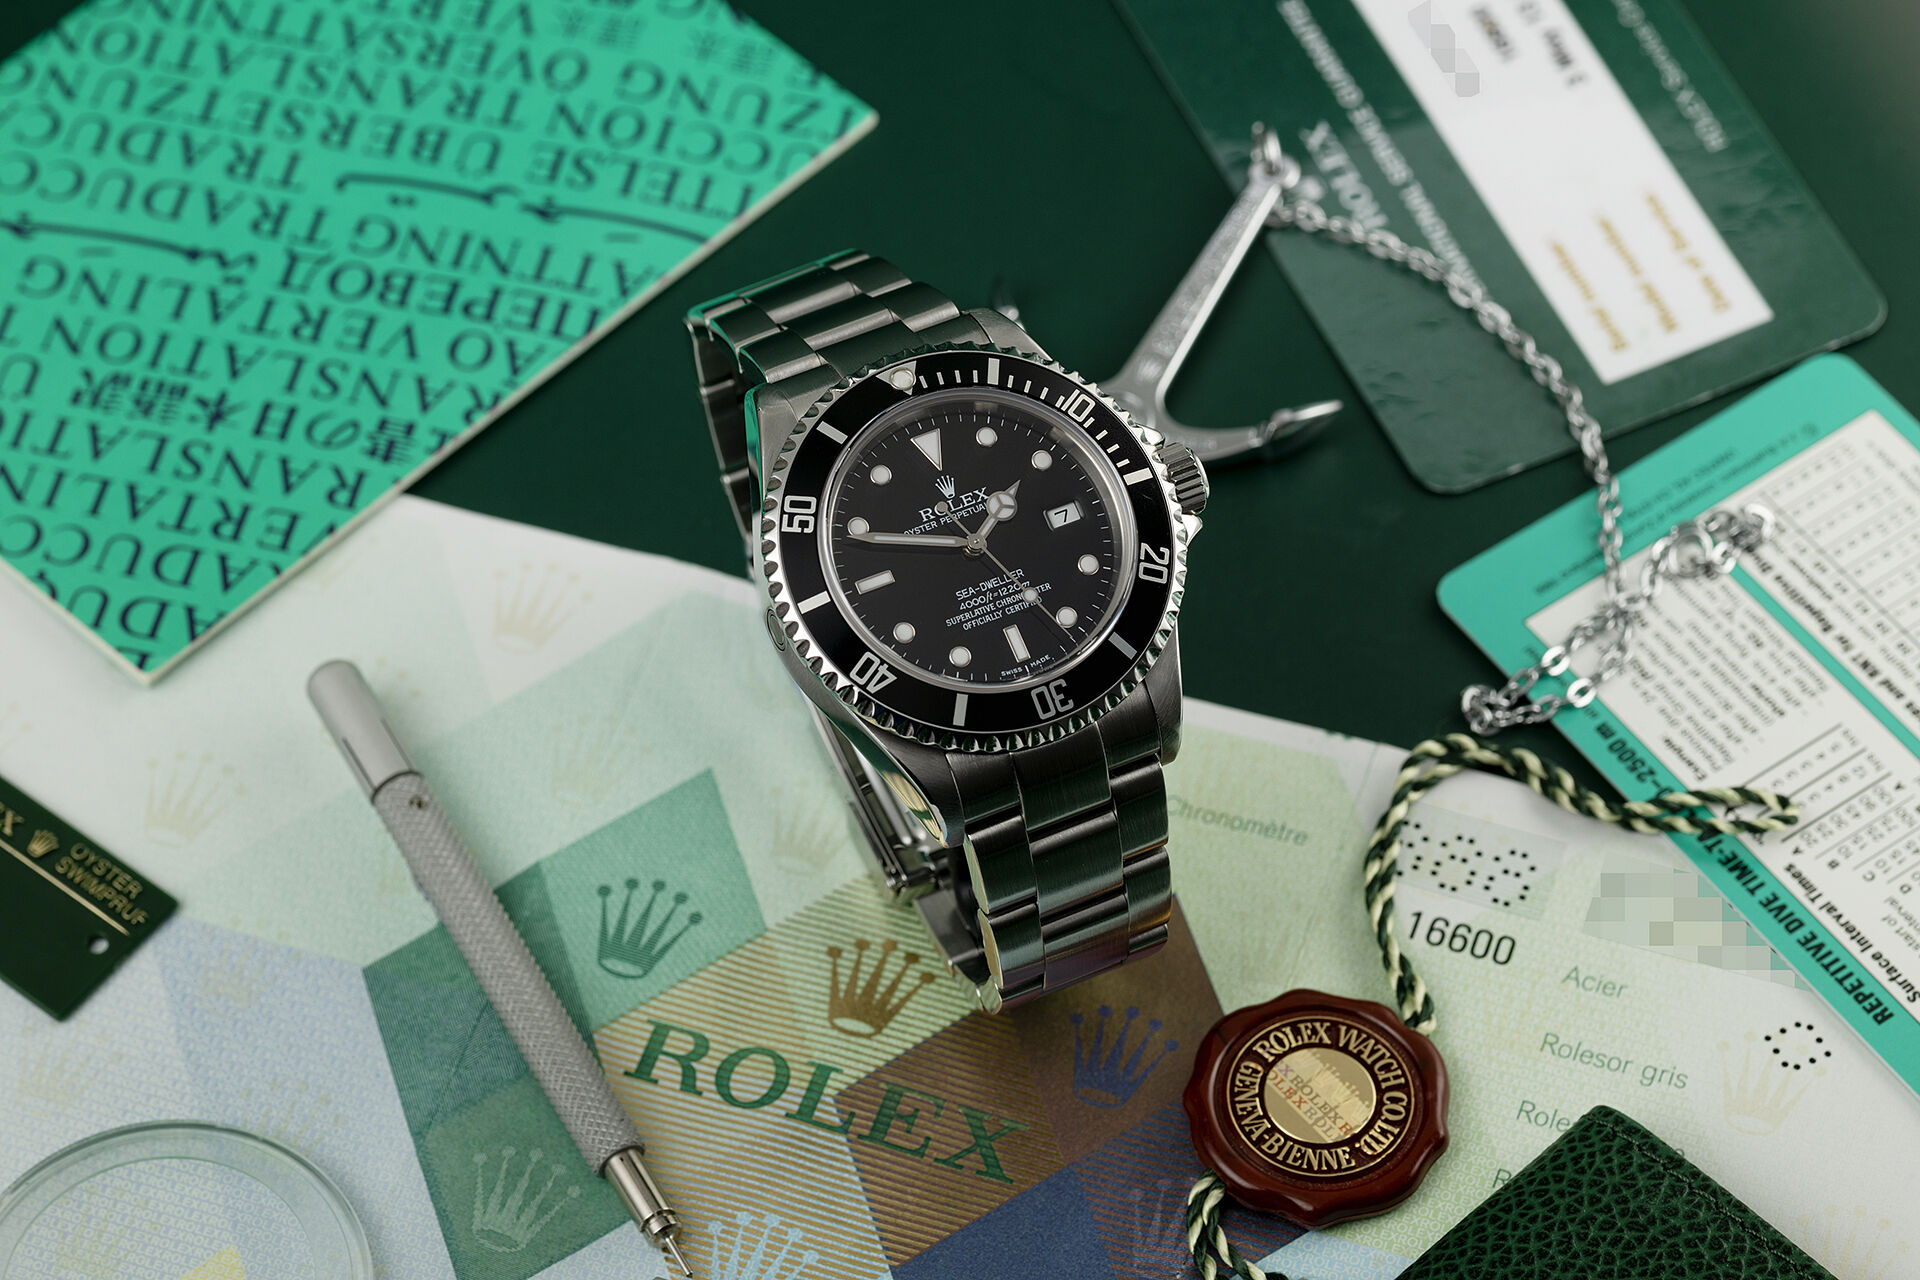 ref 16600 | Box & Certificate | Rolex Sea-Dweller